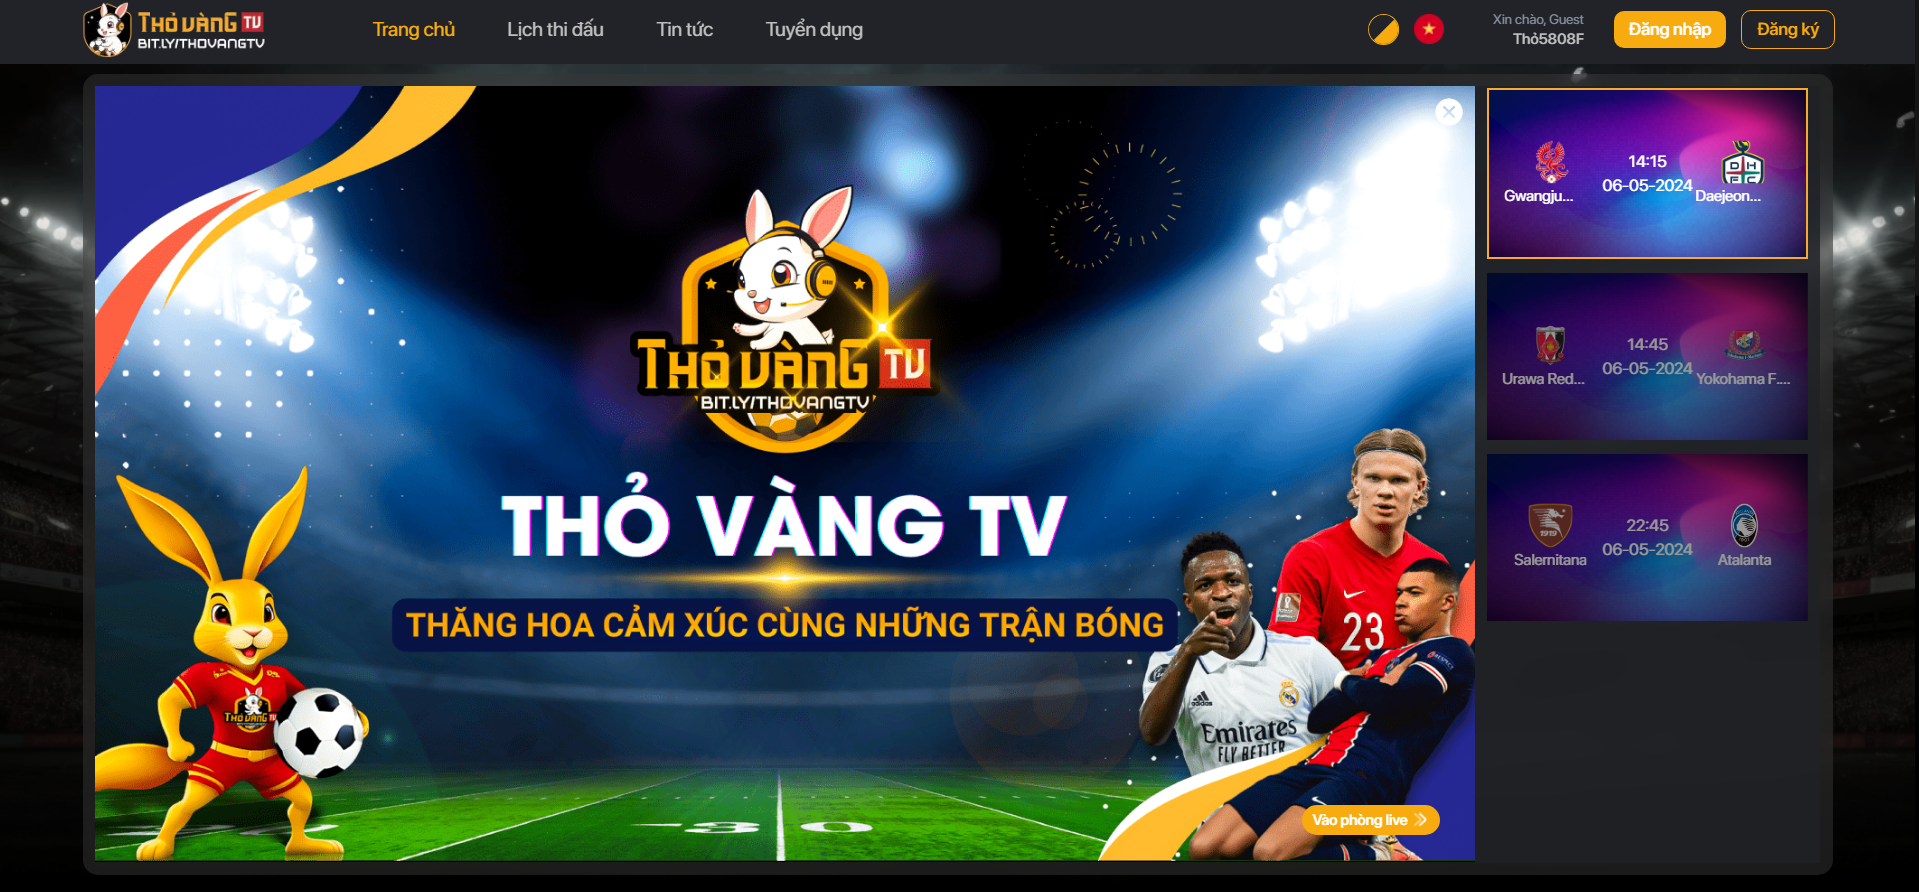 Xem bóng đá có bình luận tại Thovang TV